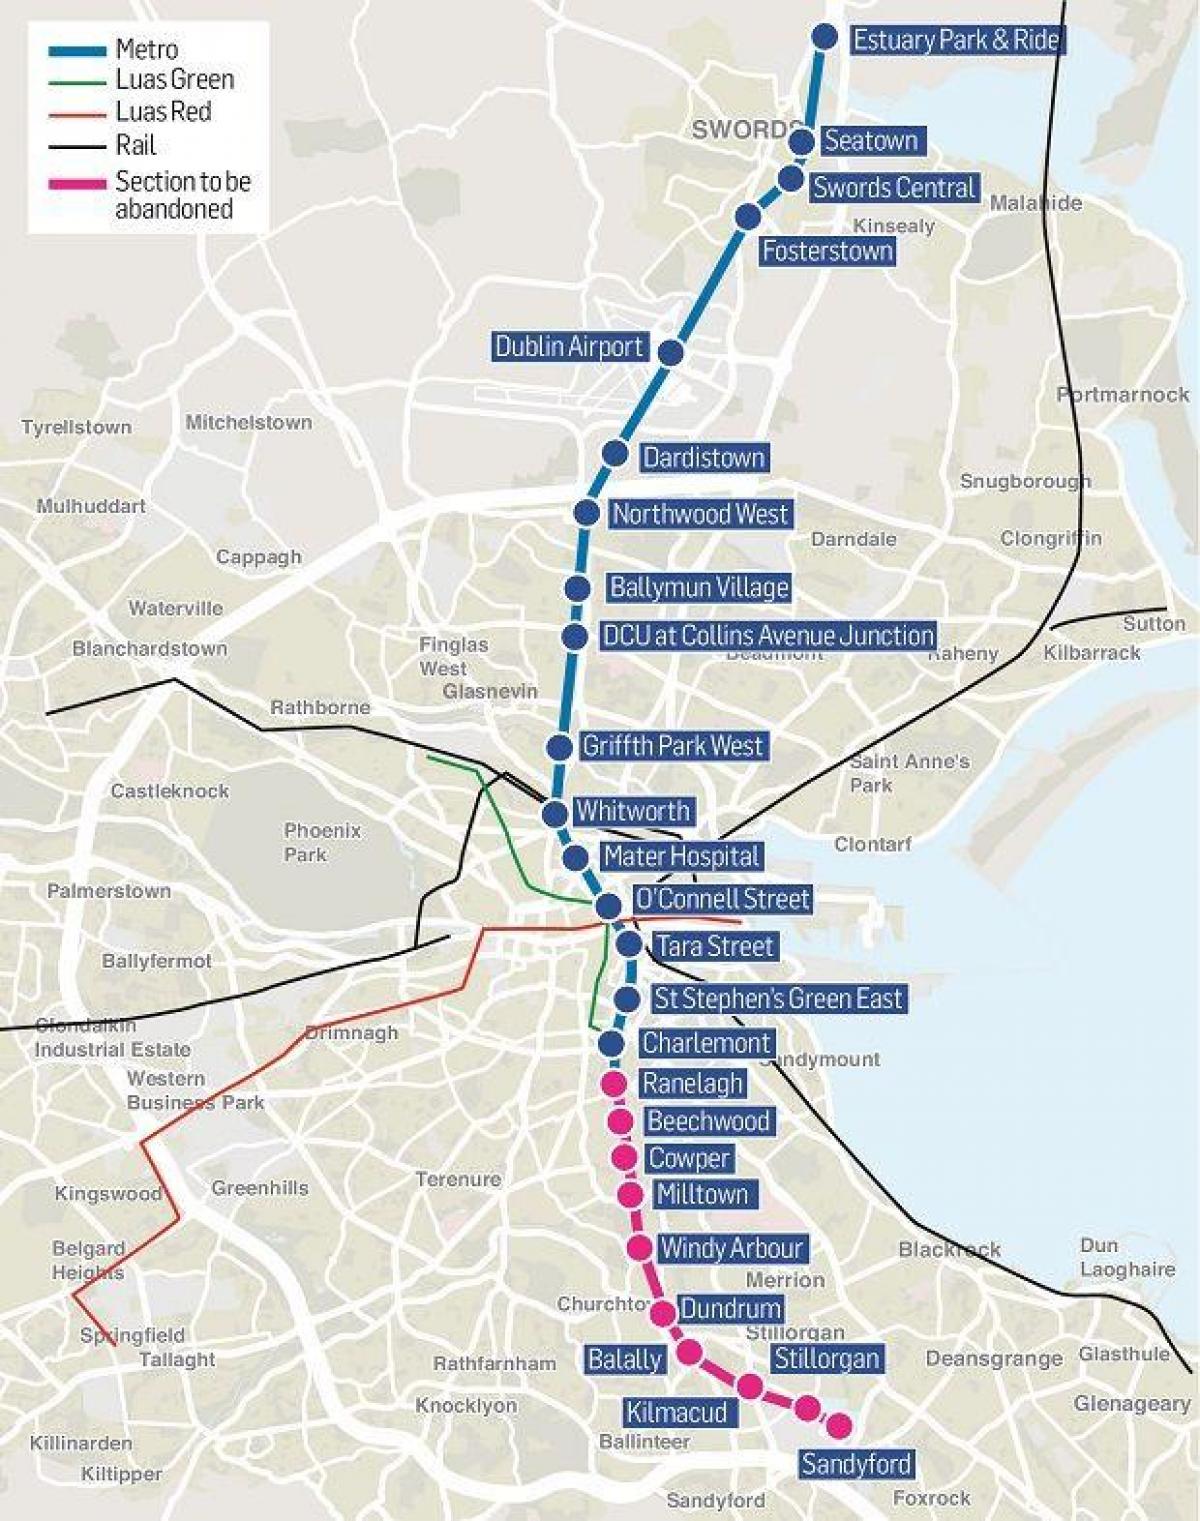 Mapa da estação de metrô de Dublin